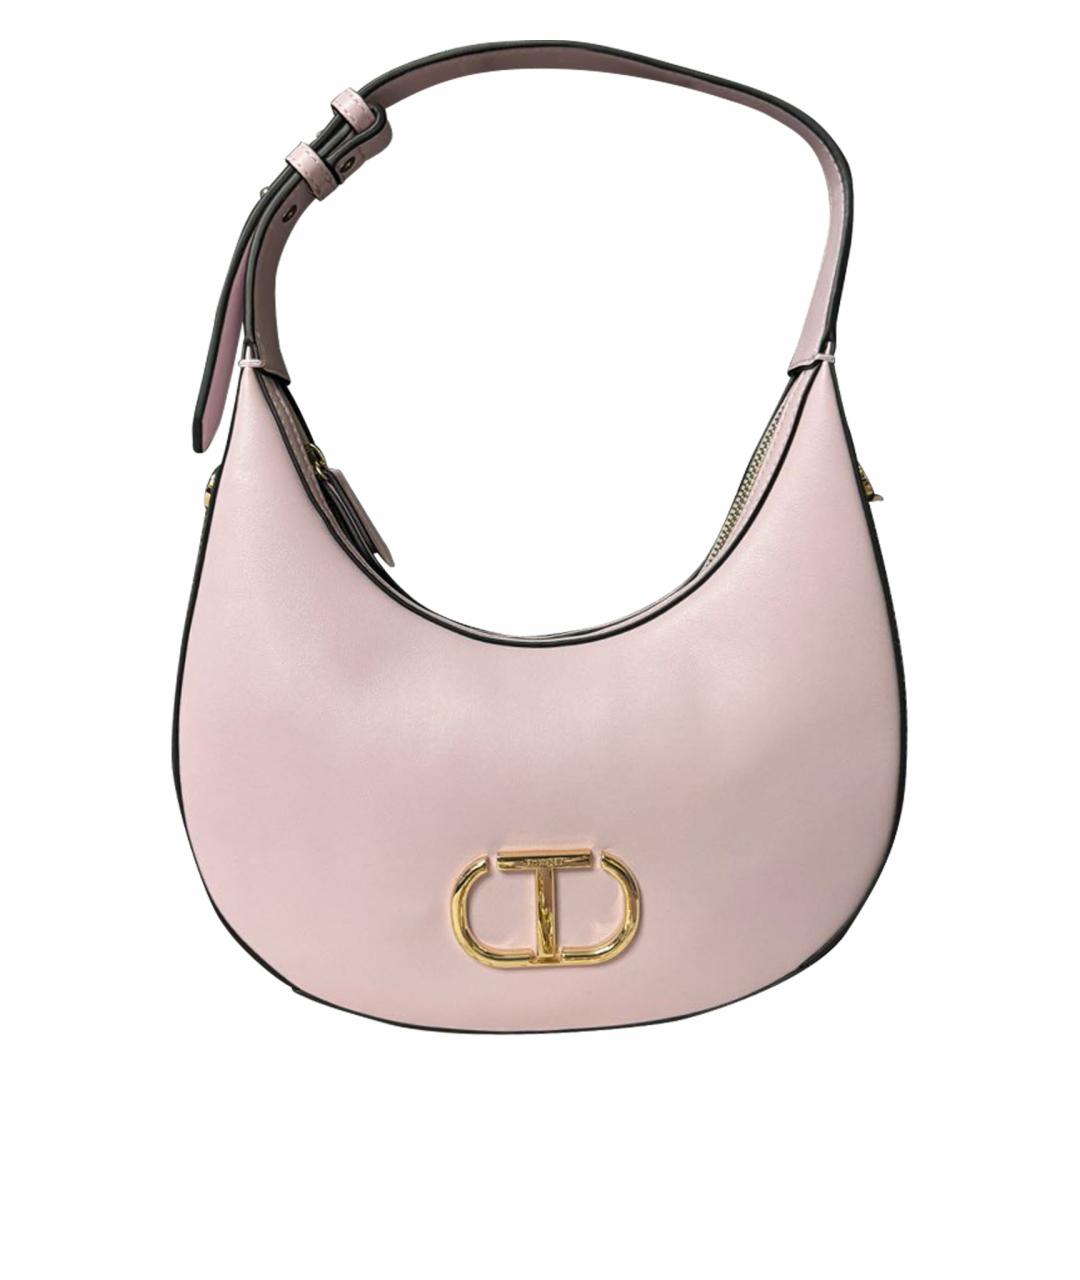 TWIN-SET Розовая сумка на плечо из искусственной кожи, фото 1